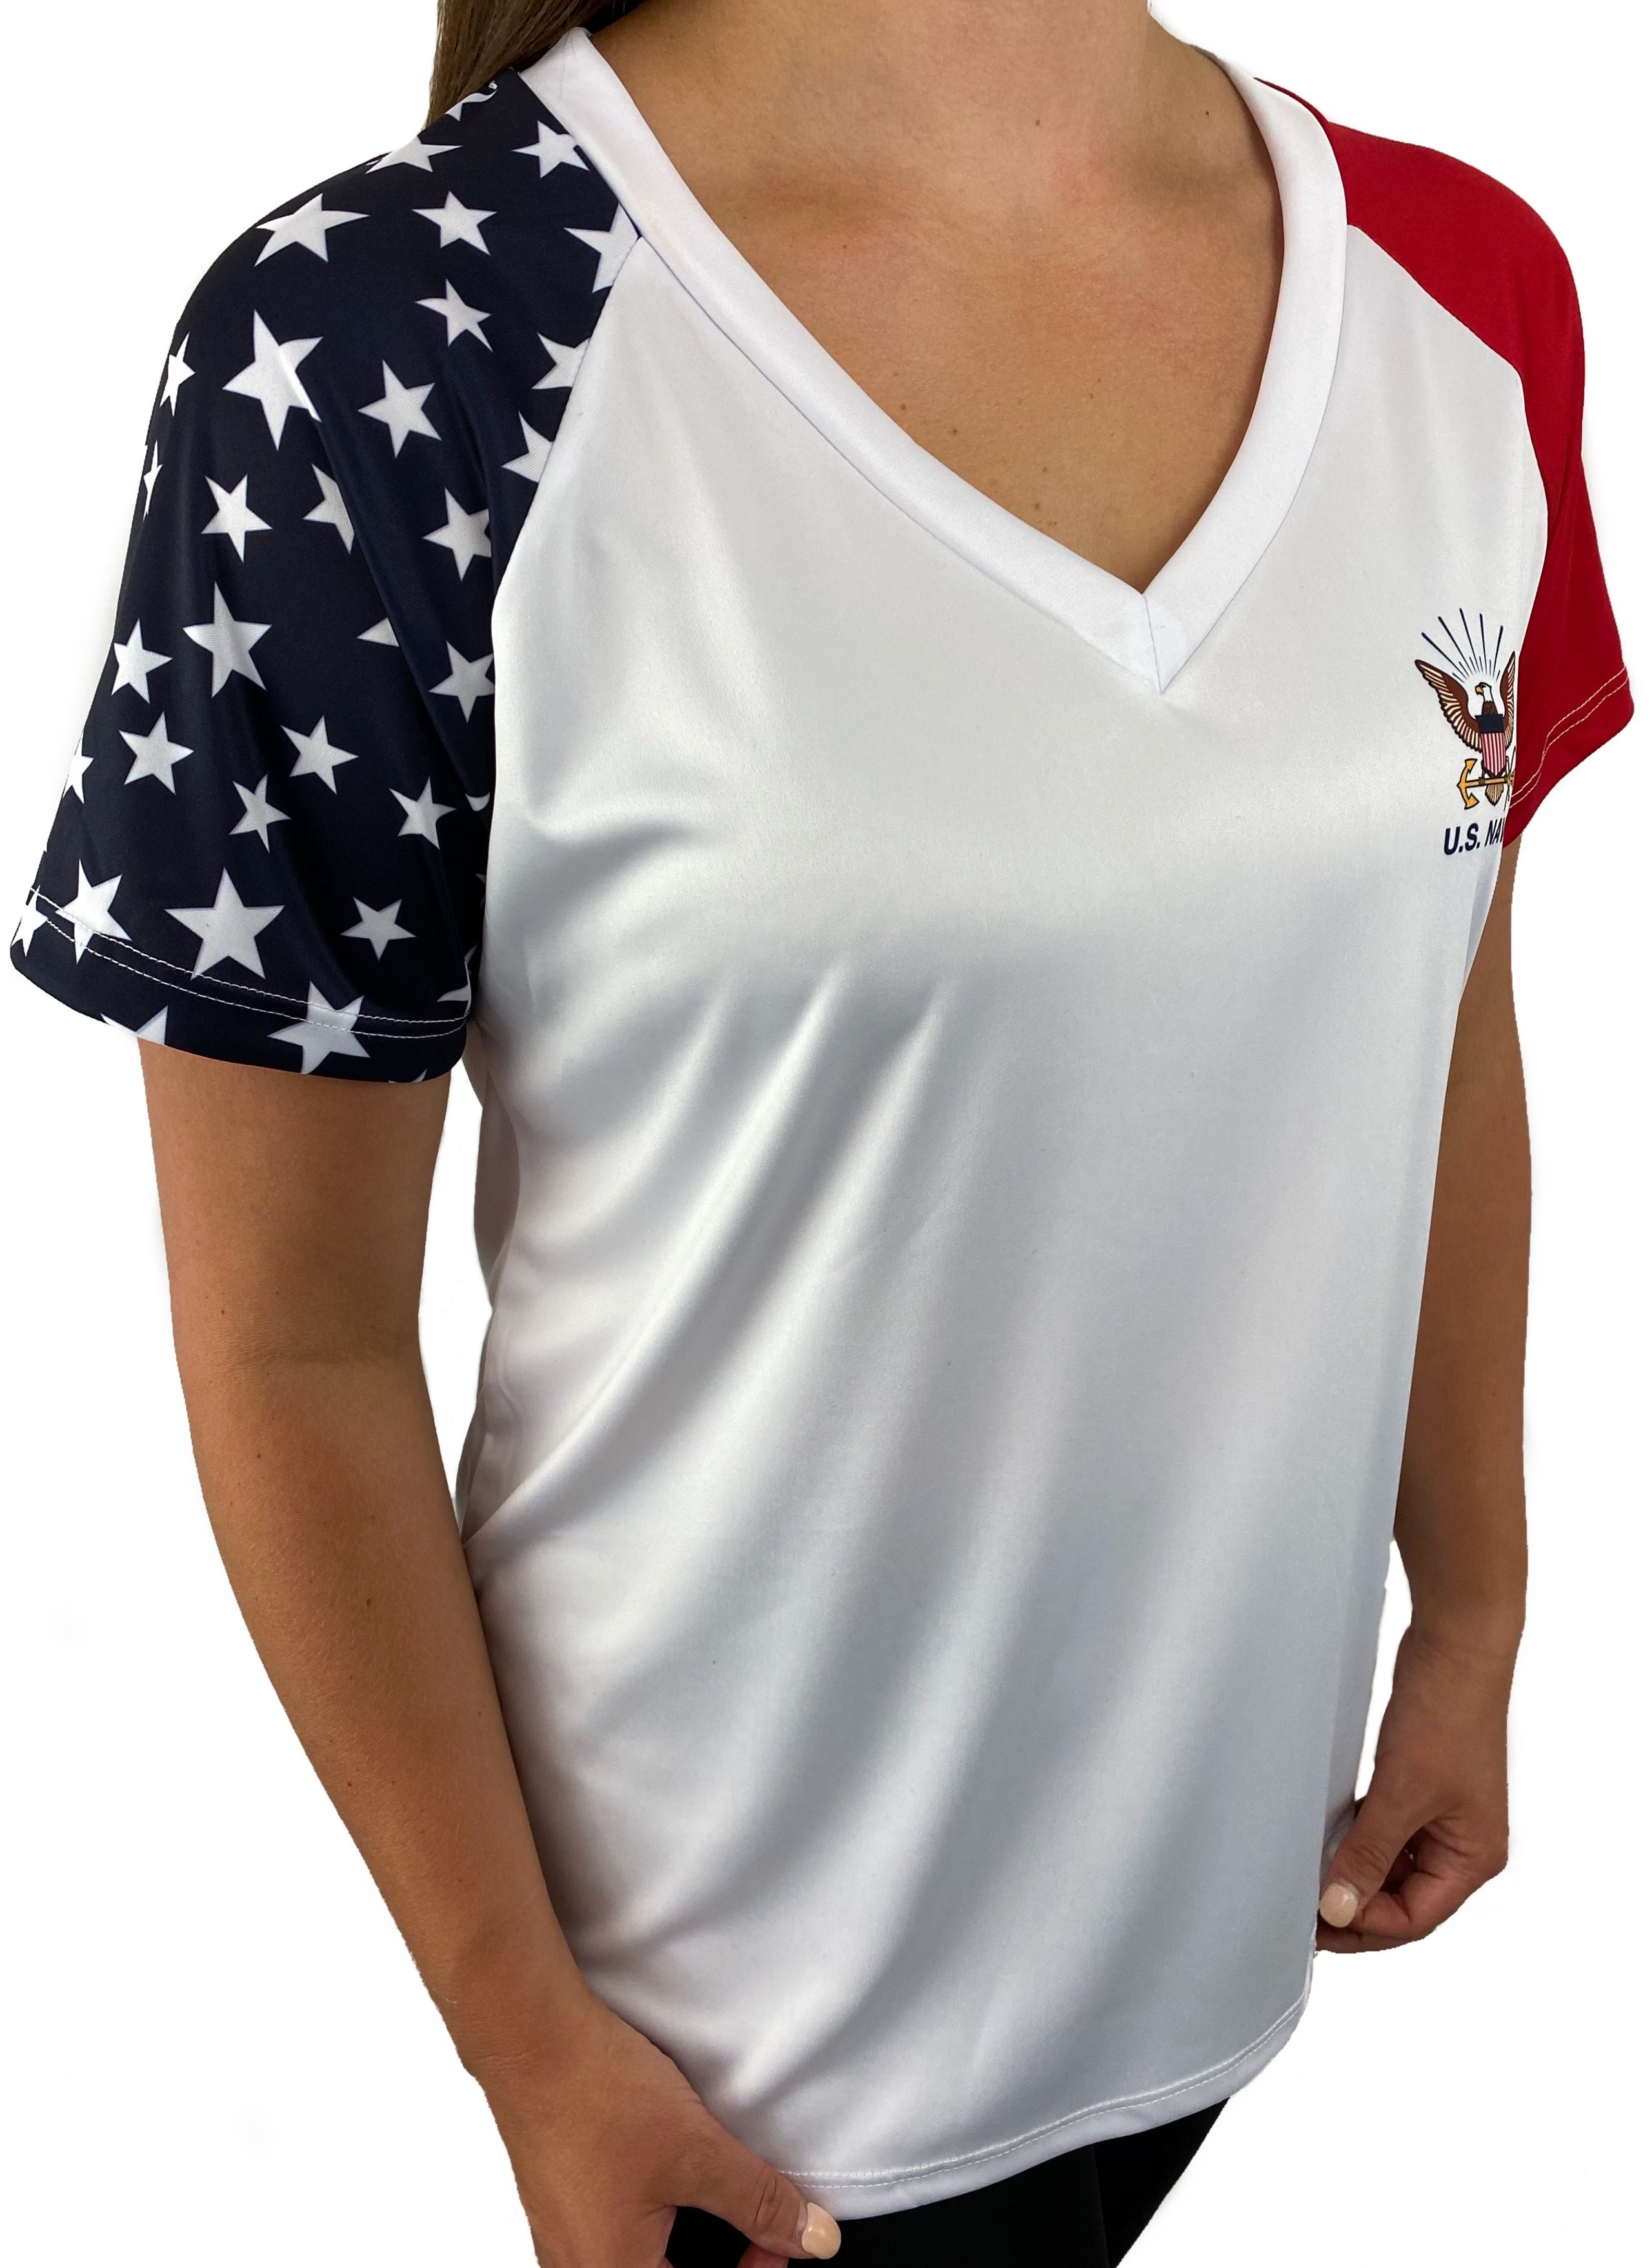 Womens Alexandria Louisiana LA Navy Vintage Sports Athletic V-Neck T-Shirt